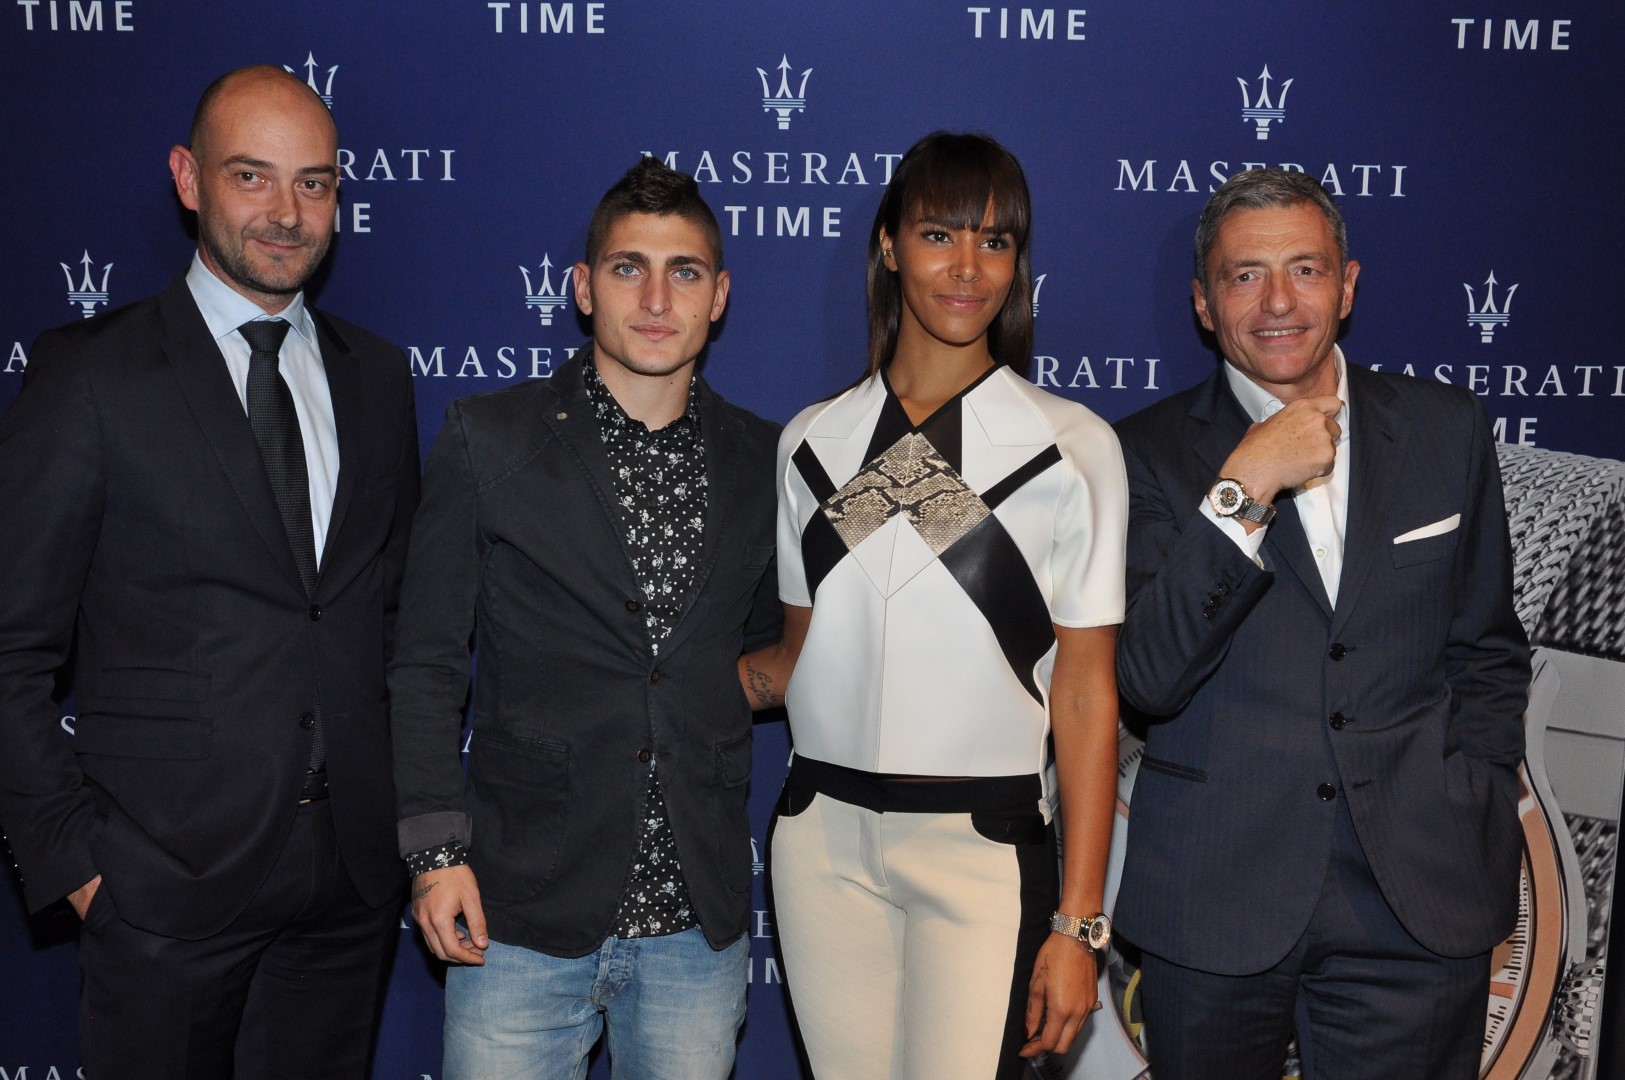 Maserati orologi 2015: il nuovo modello Epoca skeleton, guest Shy&#8217;m e Marco Verratti